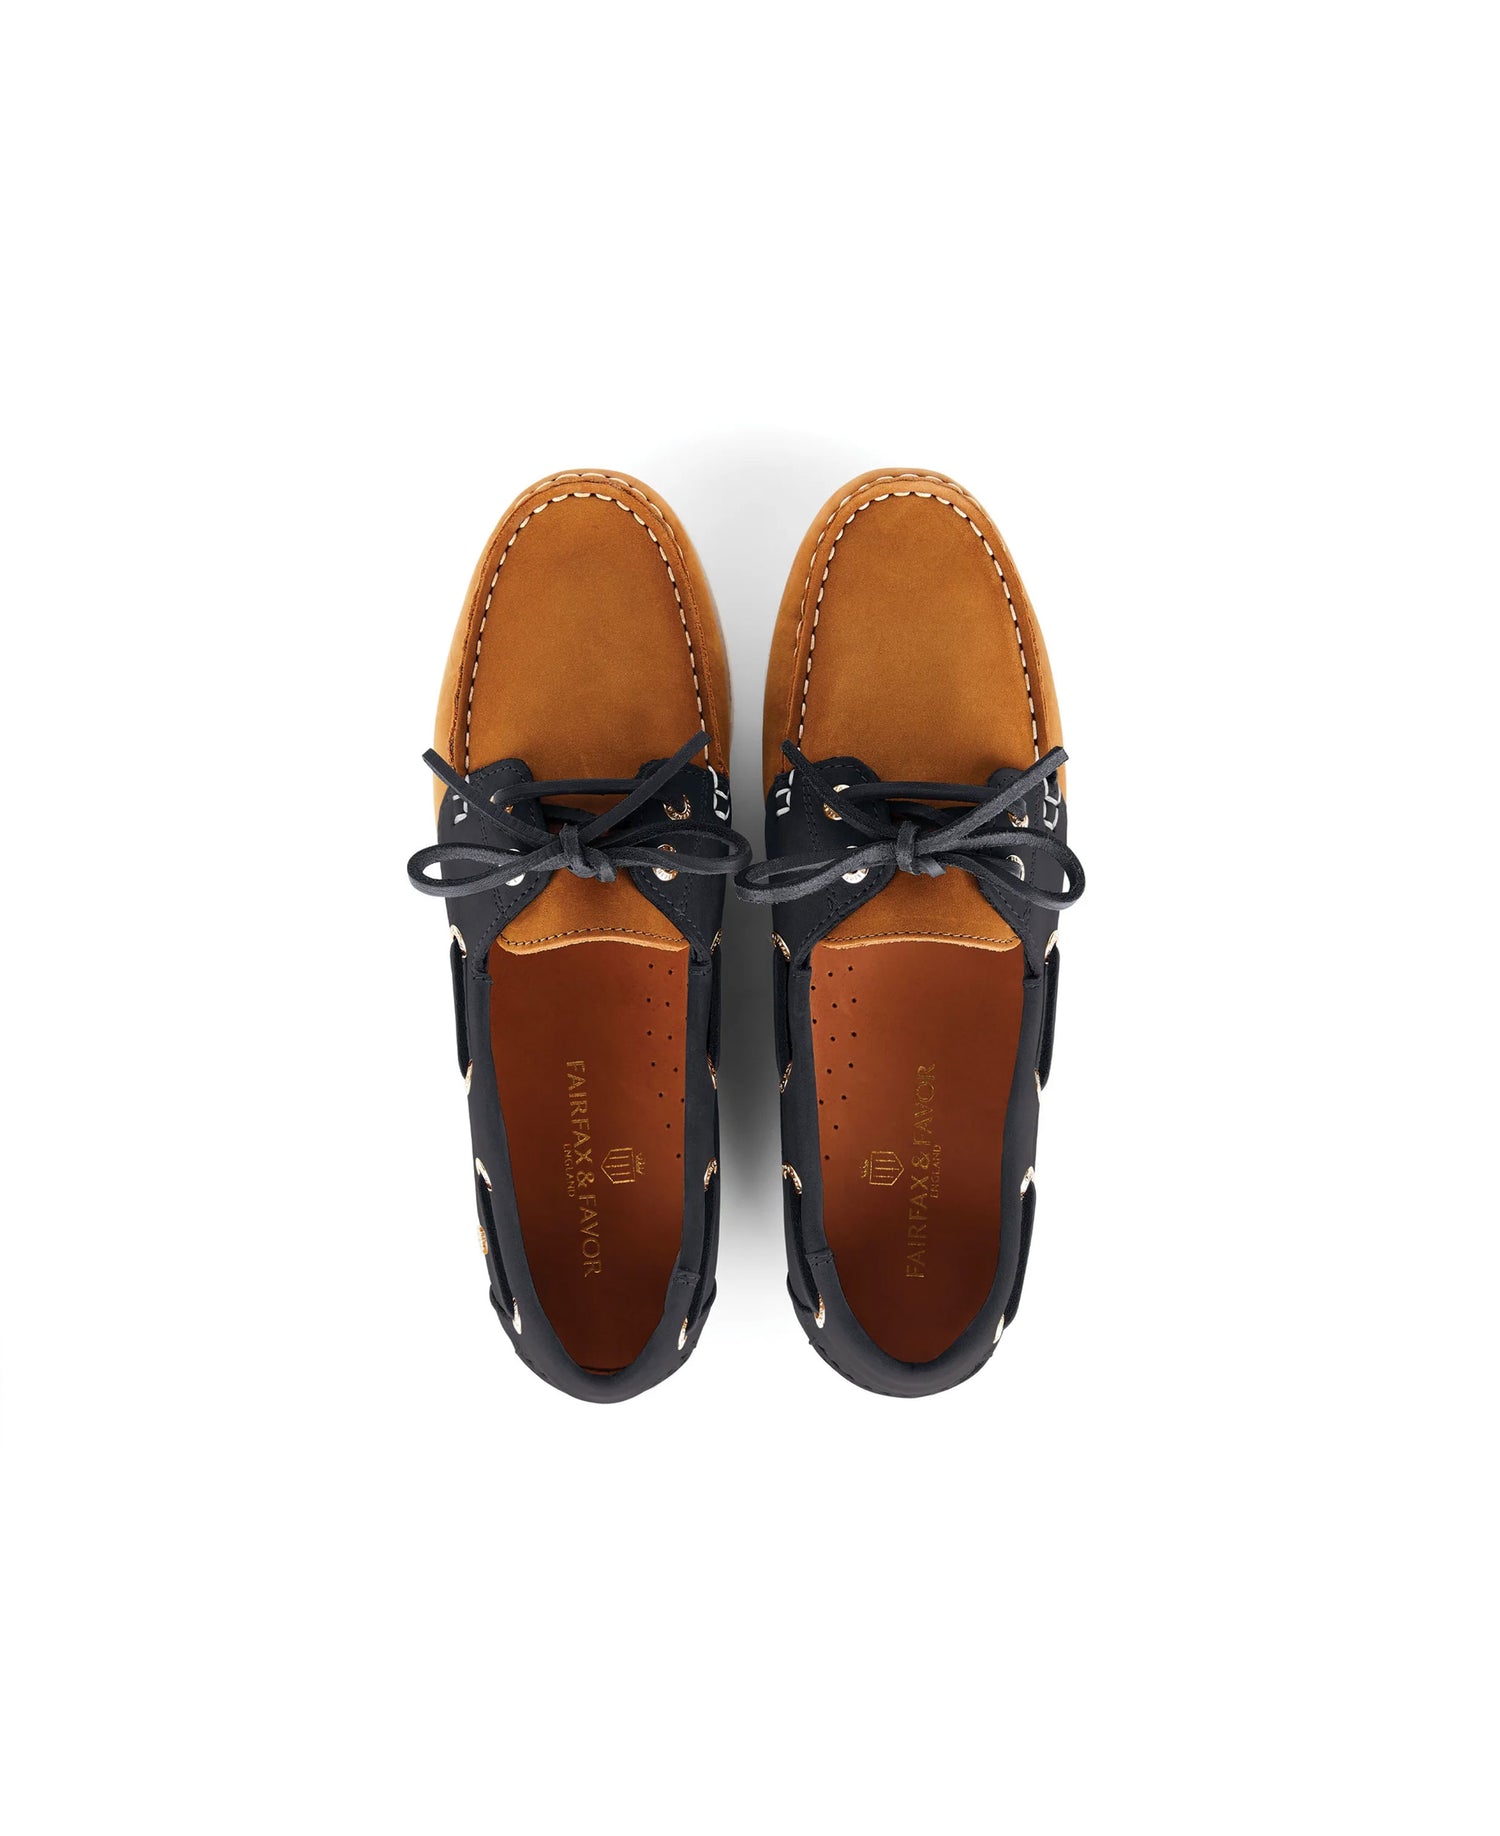 Salcombe Deck Shoe - Tan/Navy